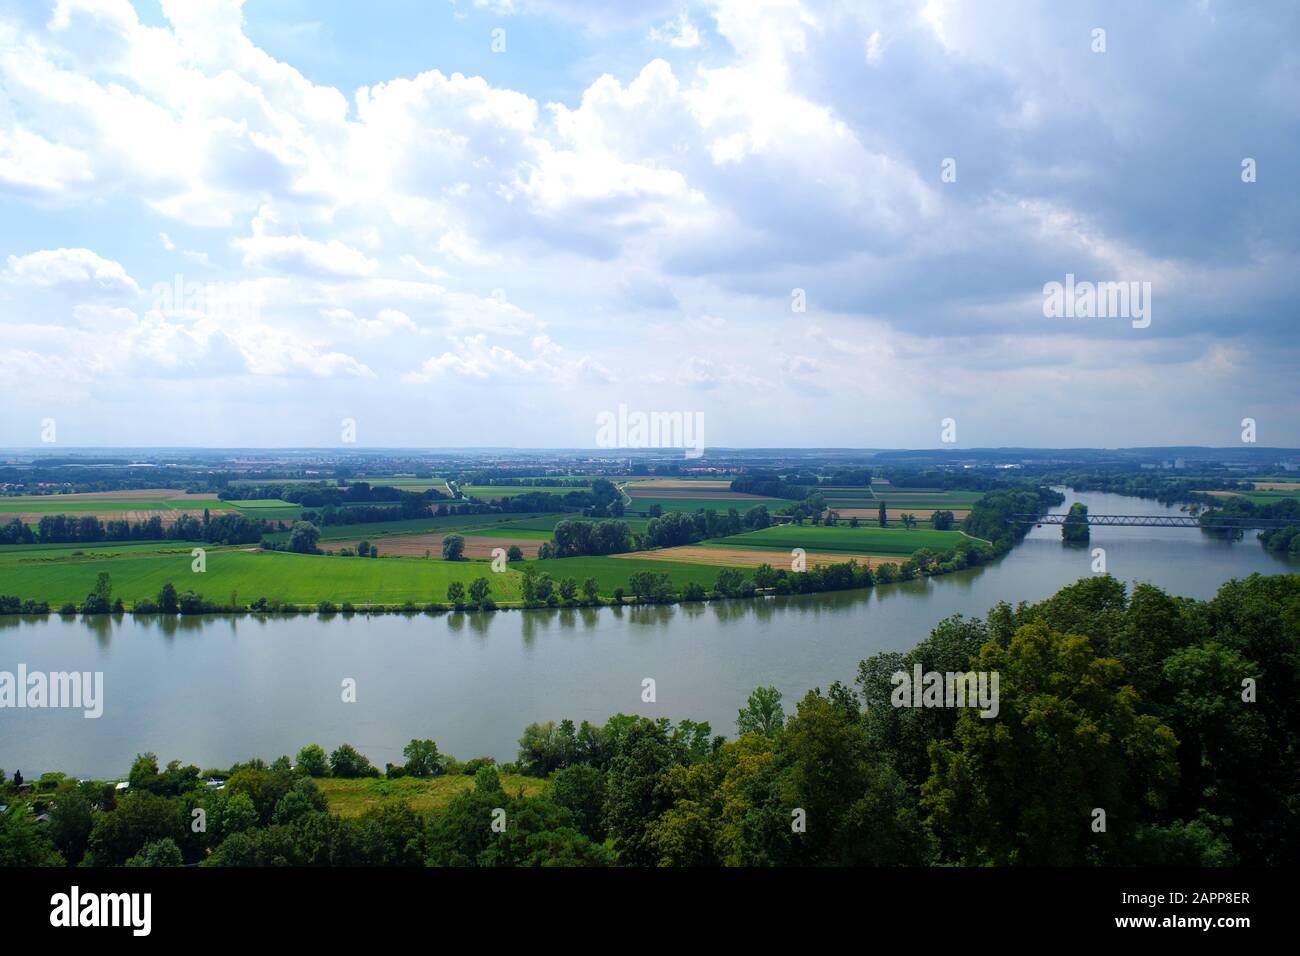 Un paisaje con el río Danubio, visto desde Walhalla (Alemania). Dominan los campos verde y amarillo. bosquecillo grueso de árboles en primer plano. Foto de stock